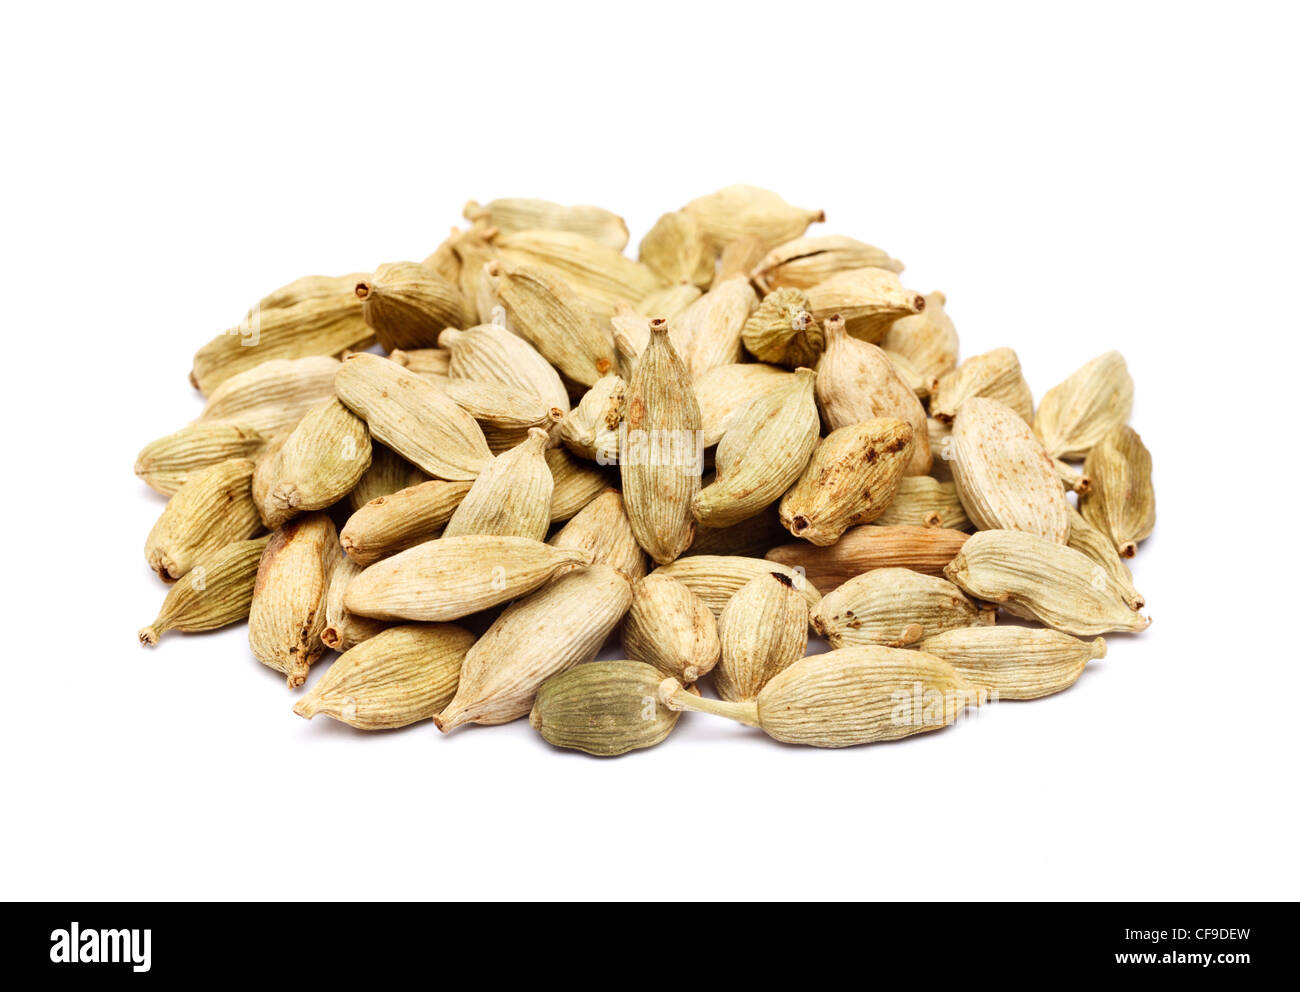 Cardomom seeds pods Stock Photo